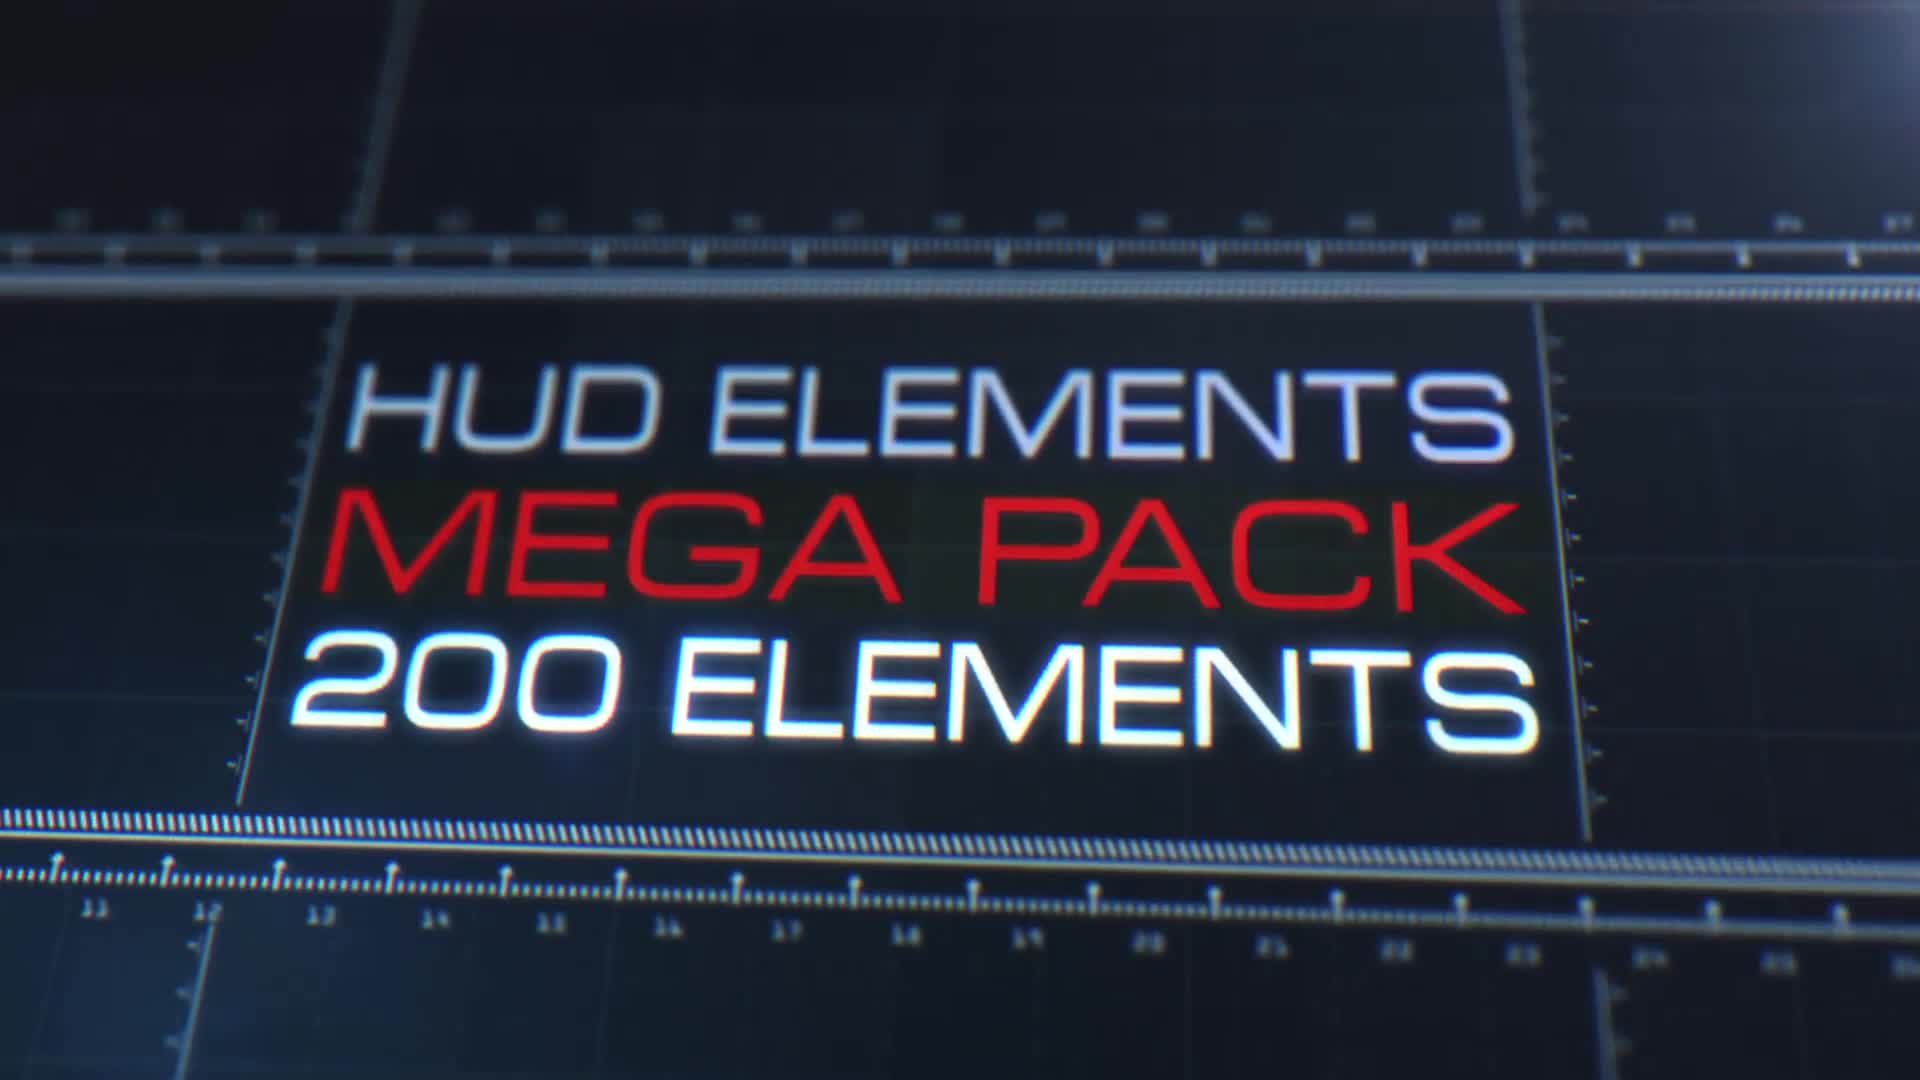 HUD Elements Mega Pack - Download Videohive 11250824